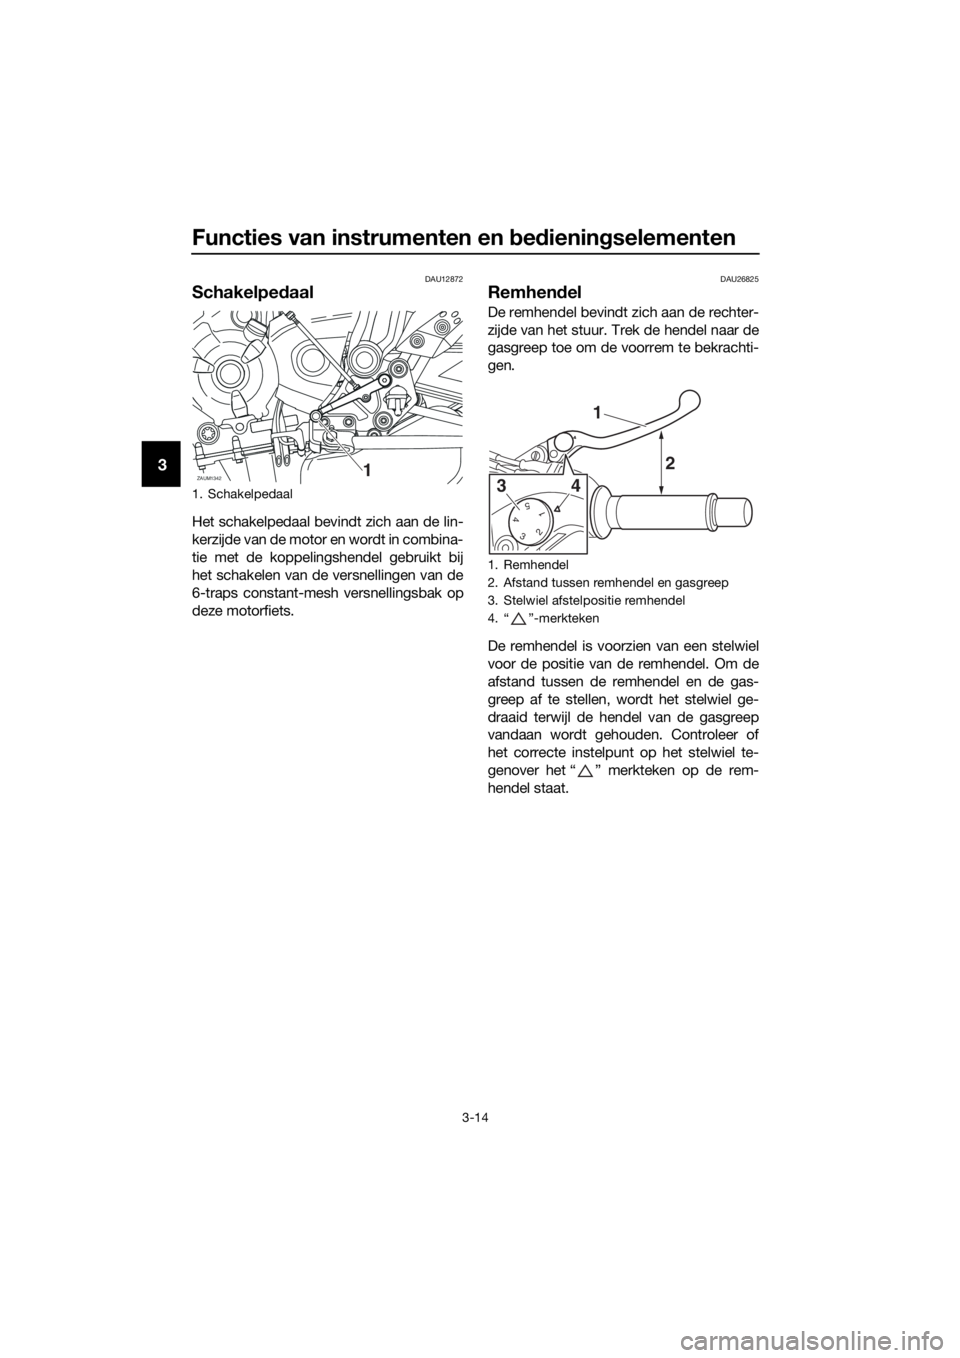 YAMAHA TRACER 700 2018  Instructieboekje (in Dutch) Functies van instrumenten en bedieningselementen
3-14
3
DAU12872
Schakelpedaal
Het schakelpedaal bevindt zich aan de lin-
kerzijde van de motor en wordt in combina-
tie met de koppelingshendel gebruik